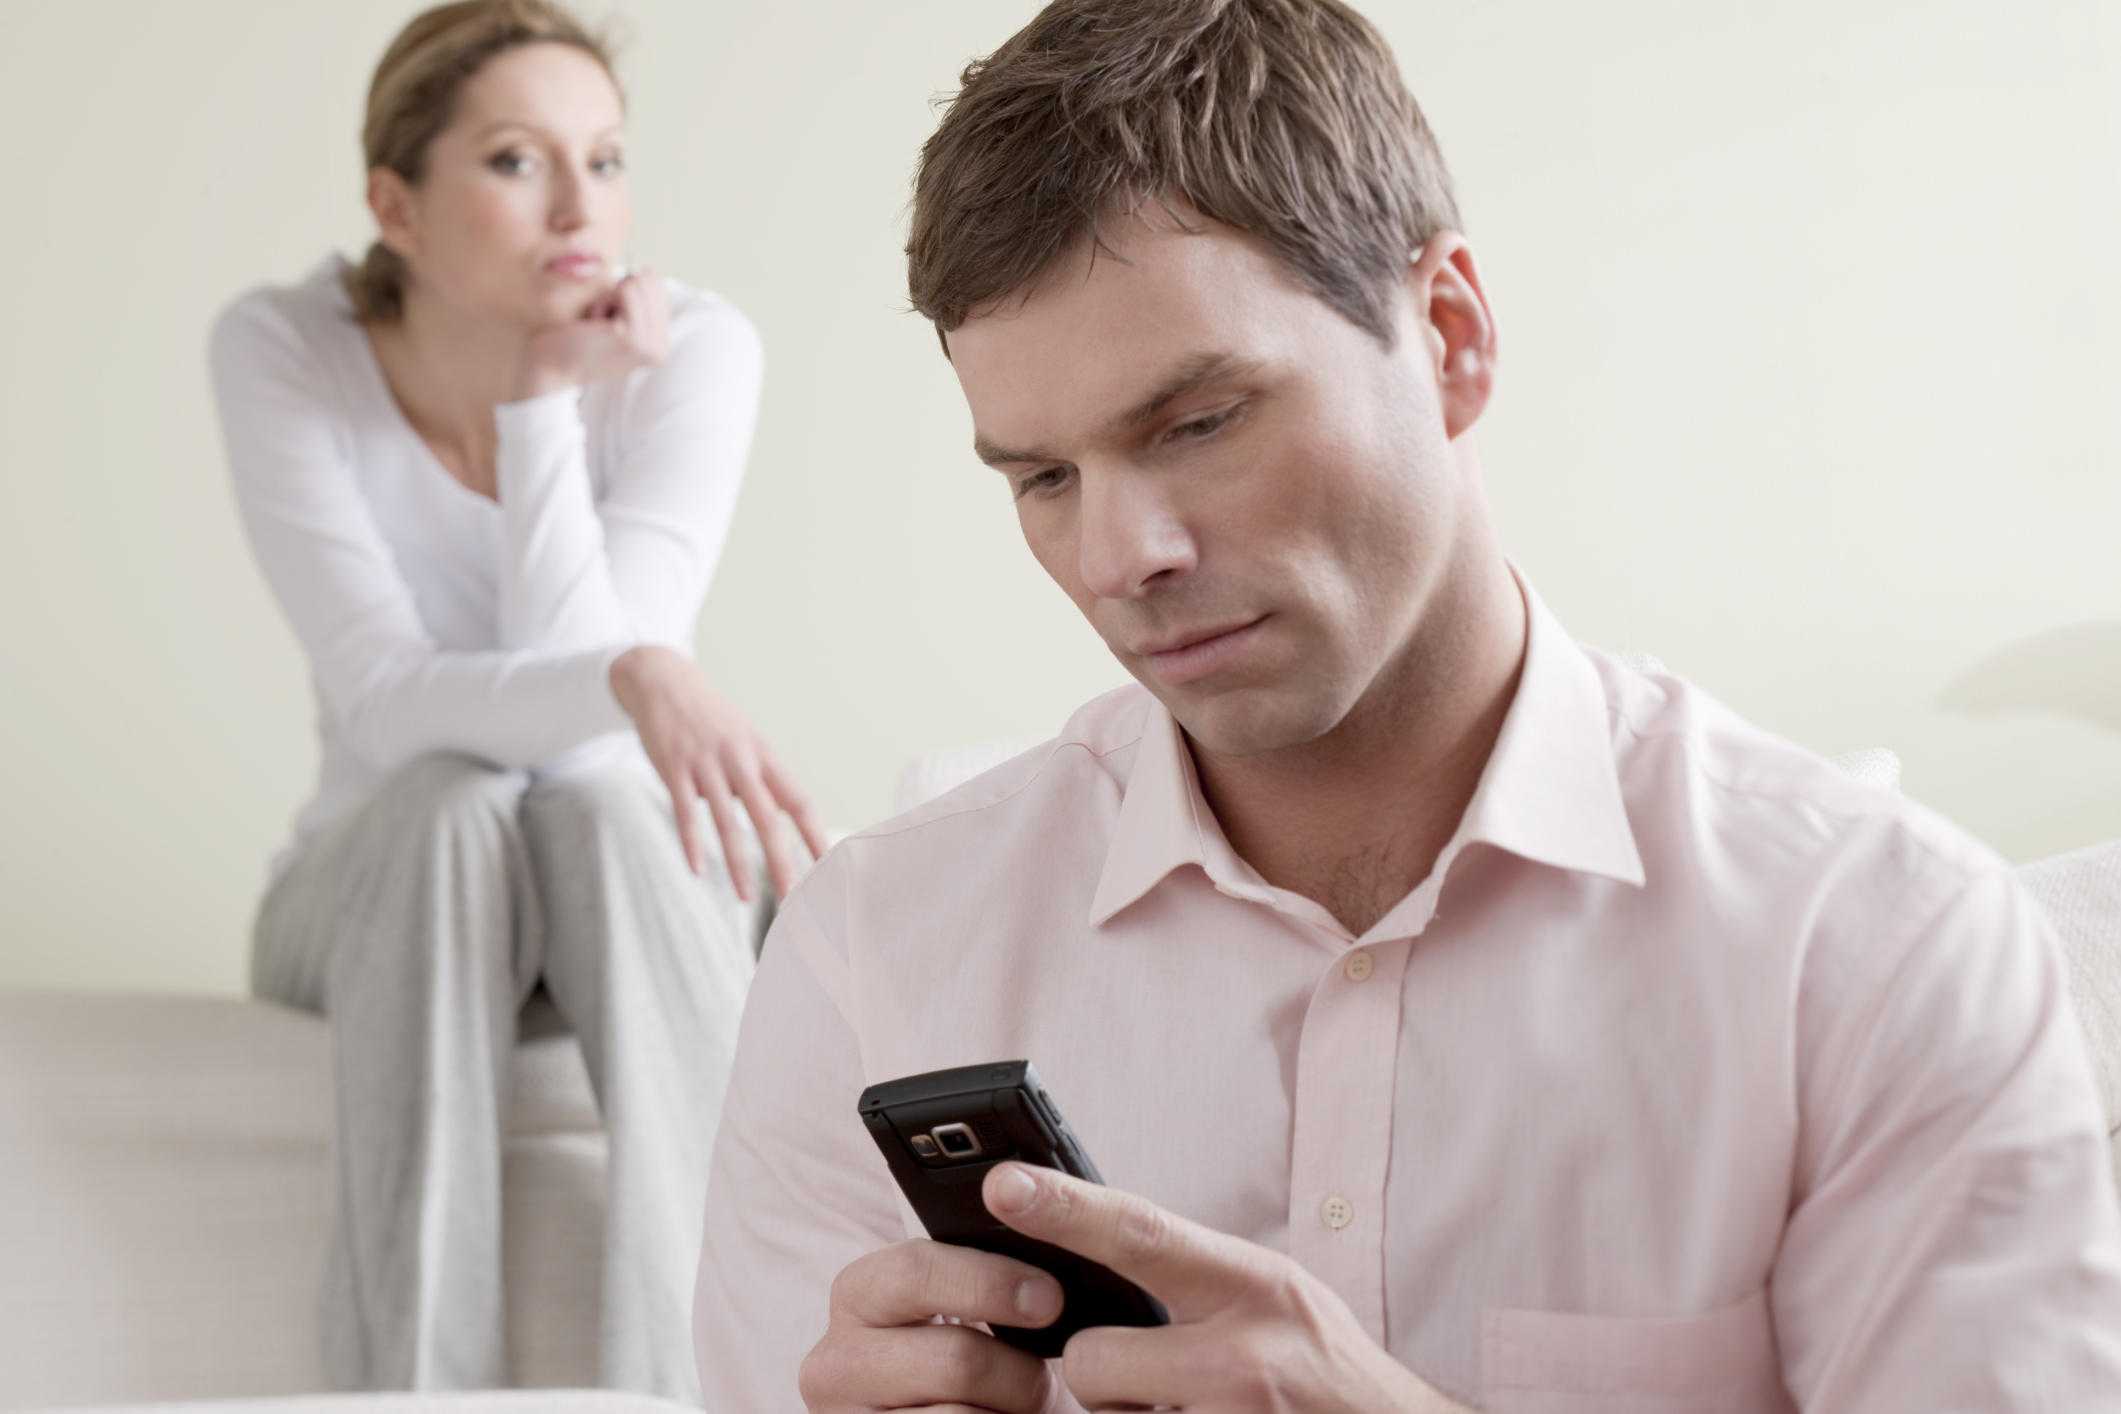 Измена девушки с другом мужа после ссоры по телефону с муженьком